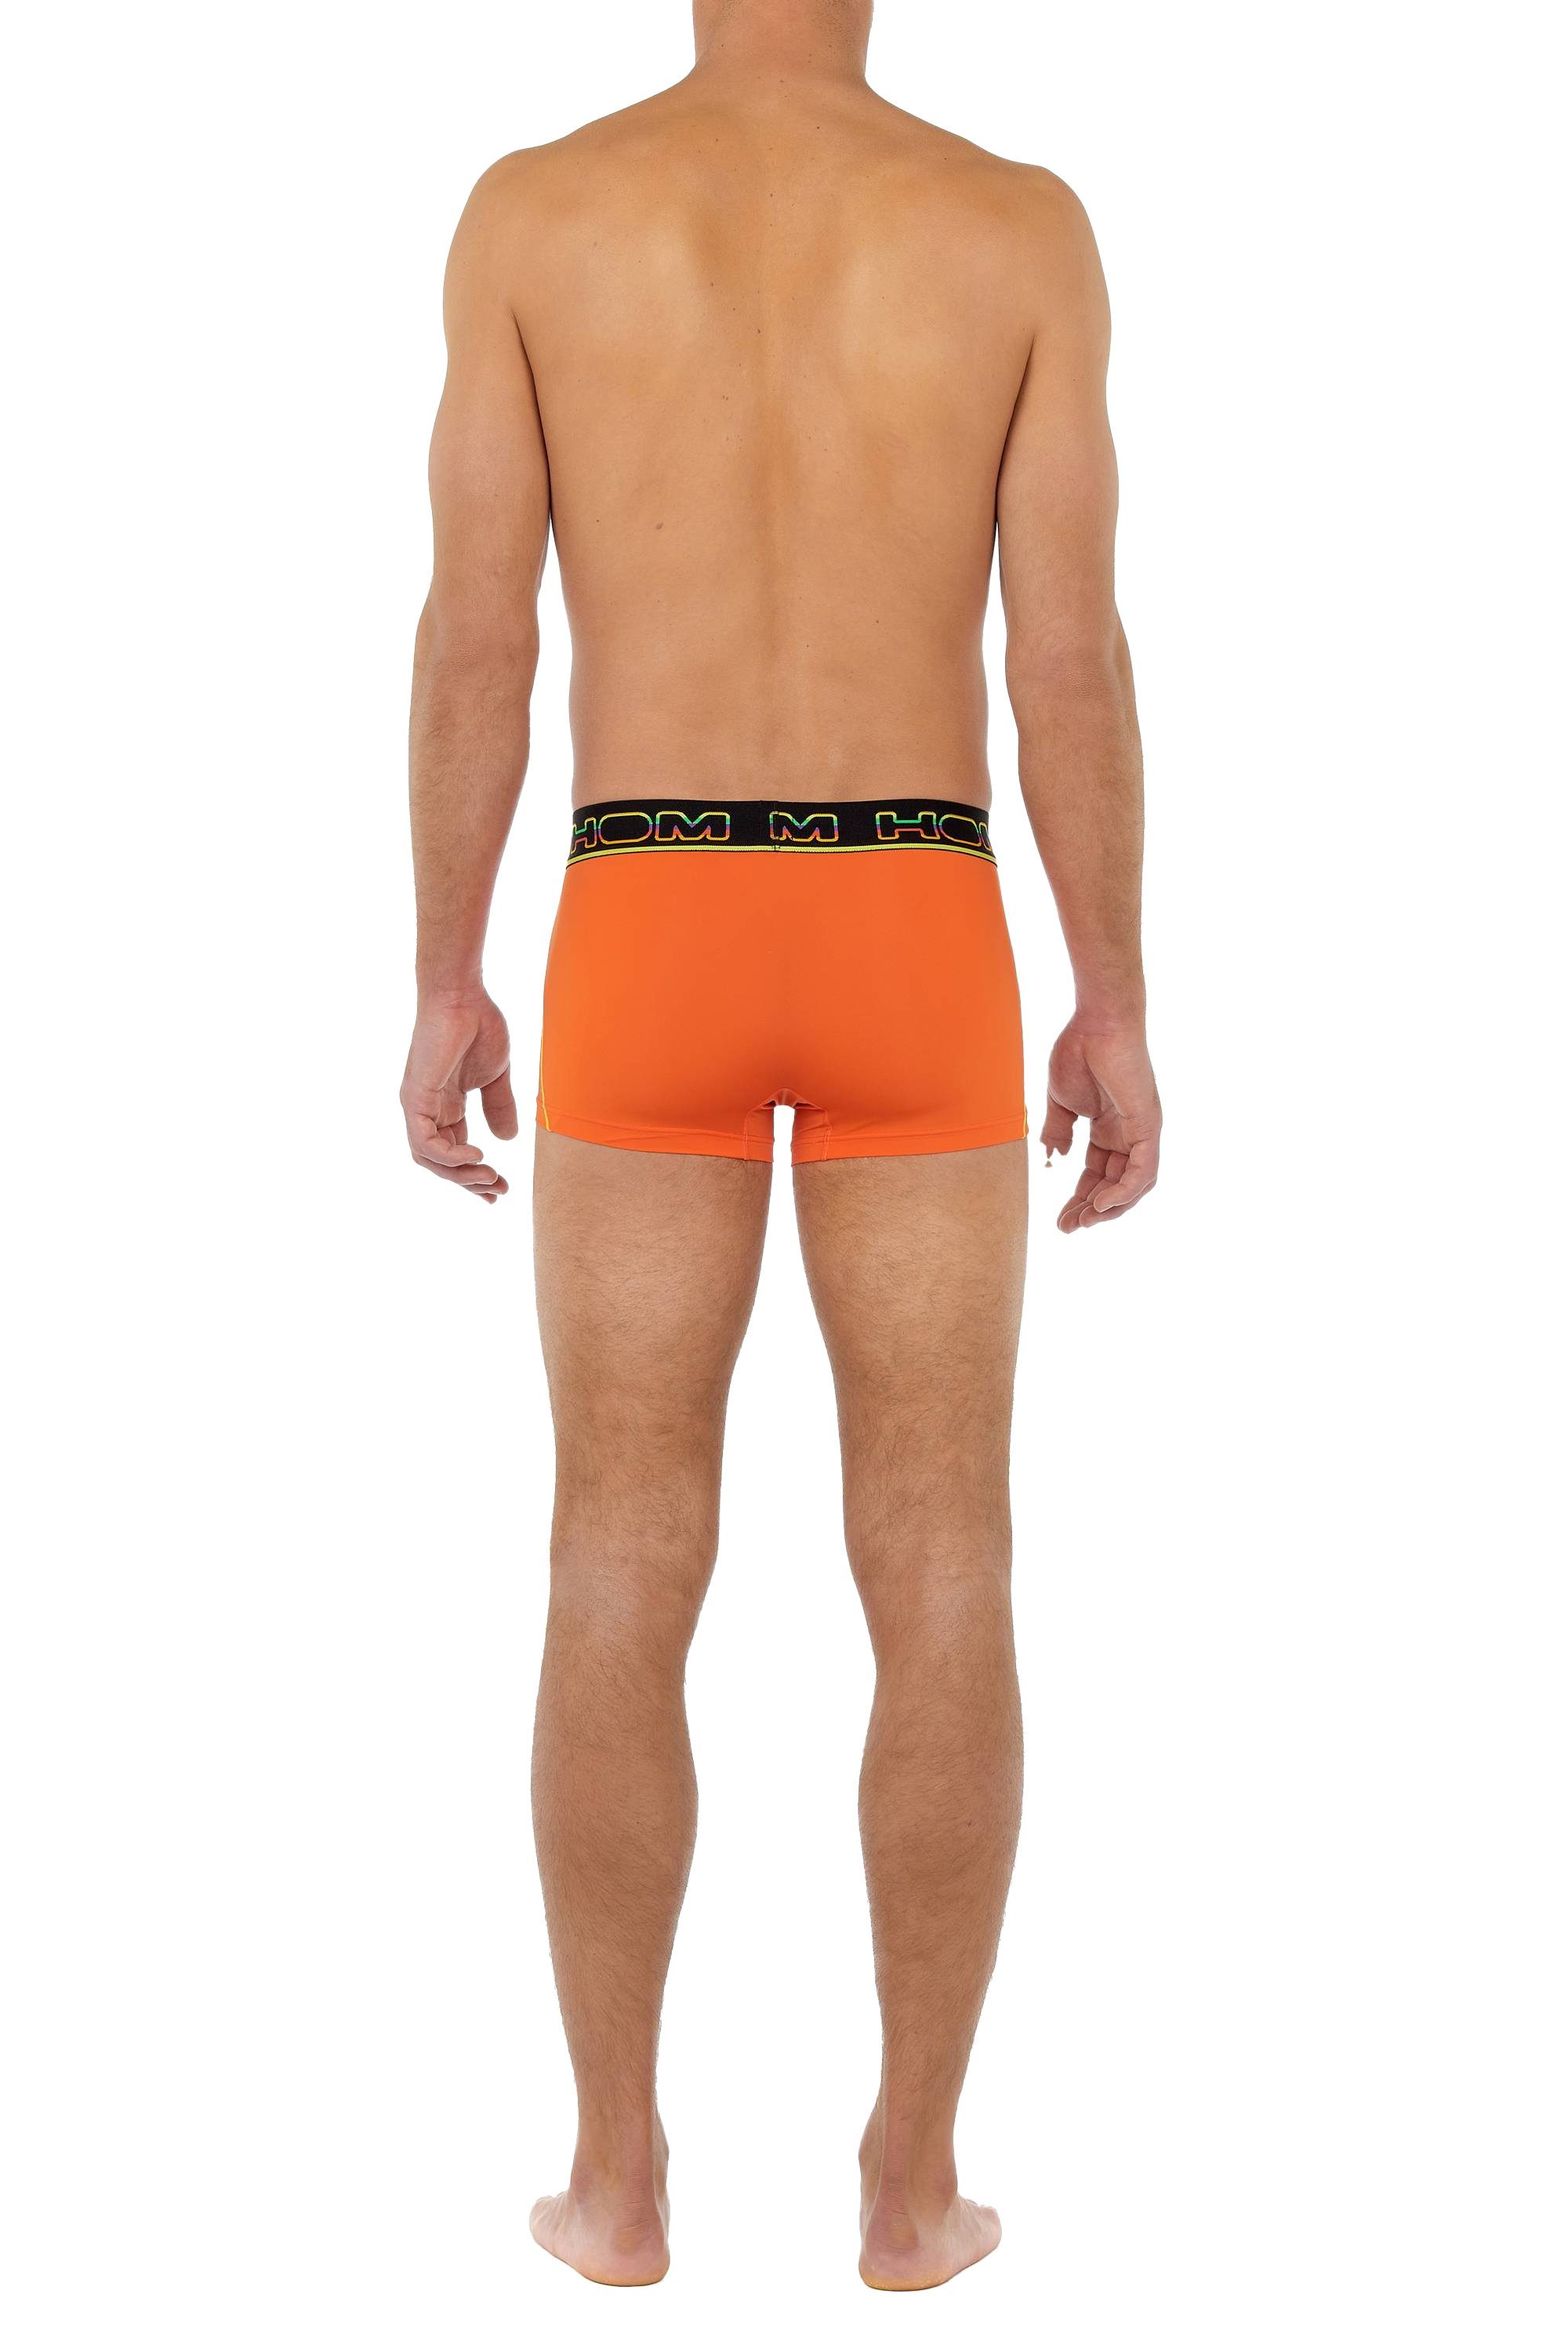 Pants, Trunks Herren Boxer Unterwäsche - Sport, Rainbow Hom Orange